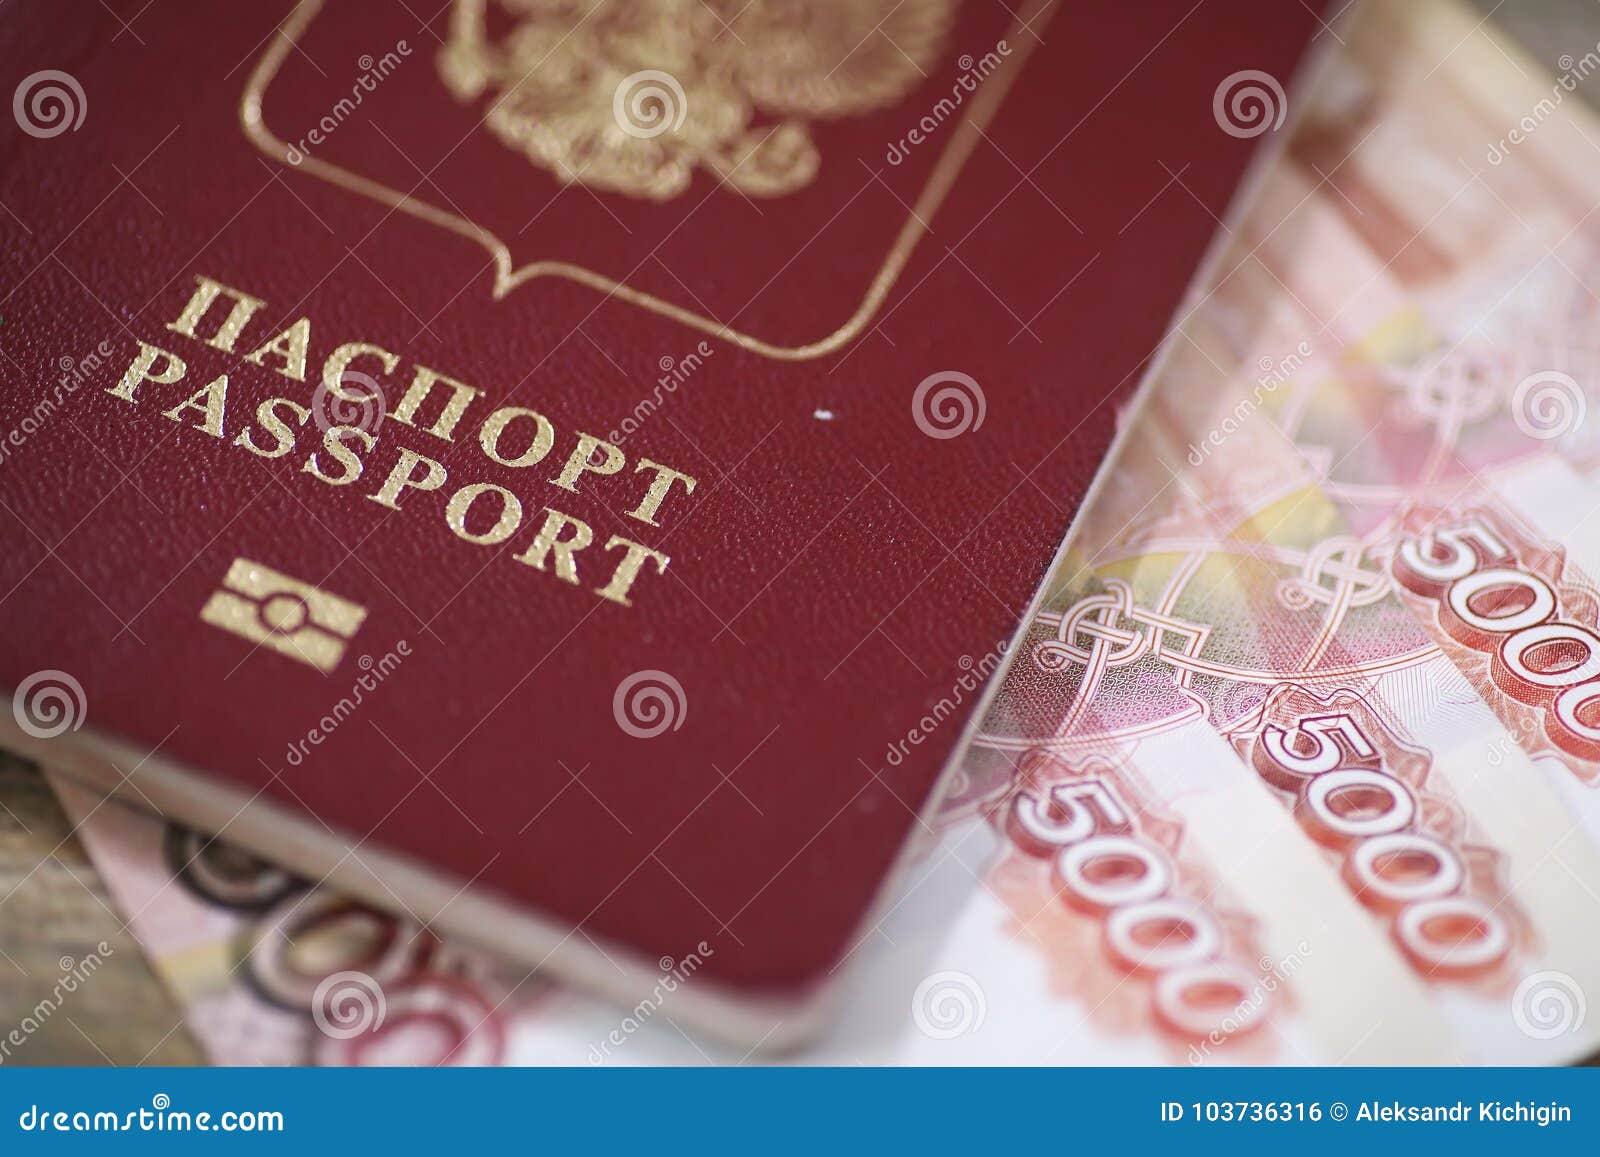 Получить деньги в Ростове на Дону по паспорту без проверки